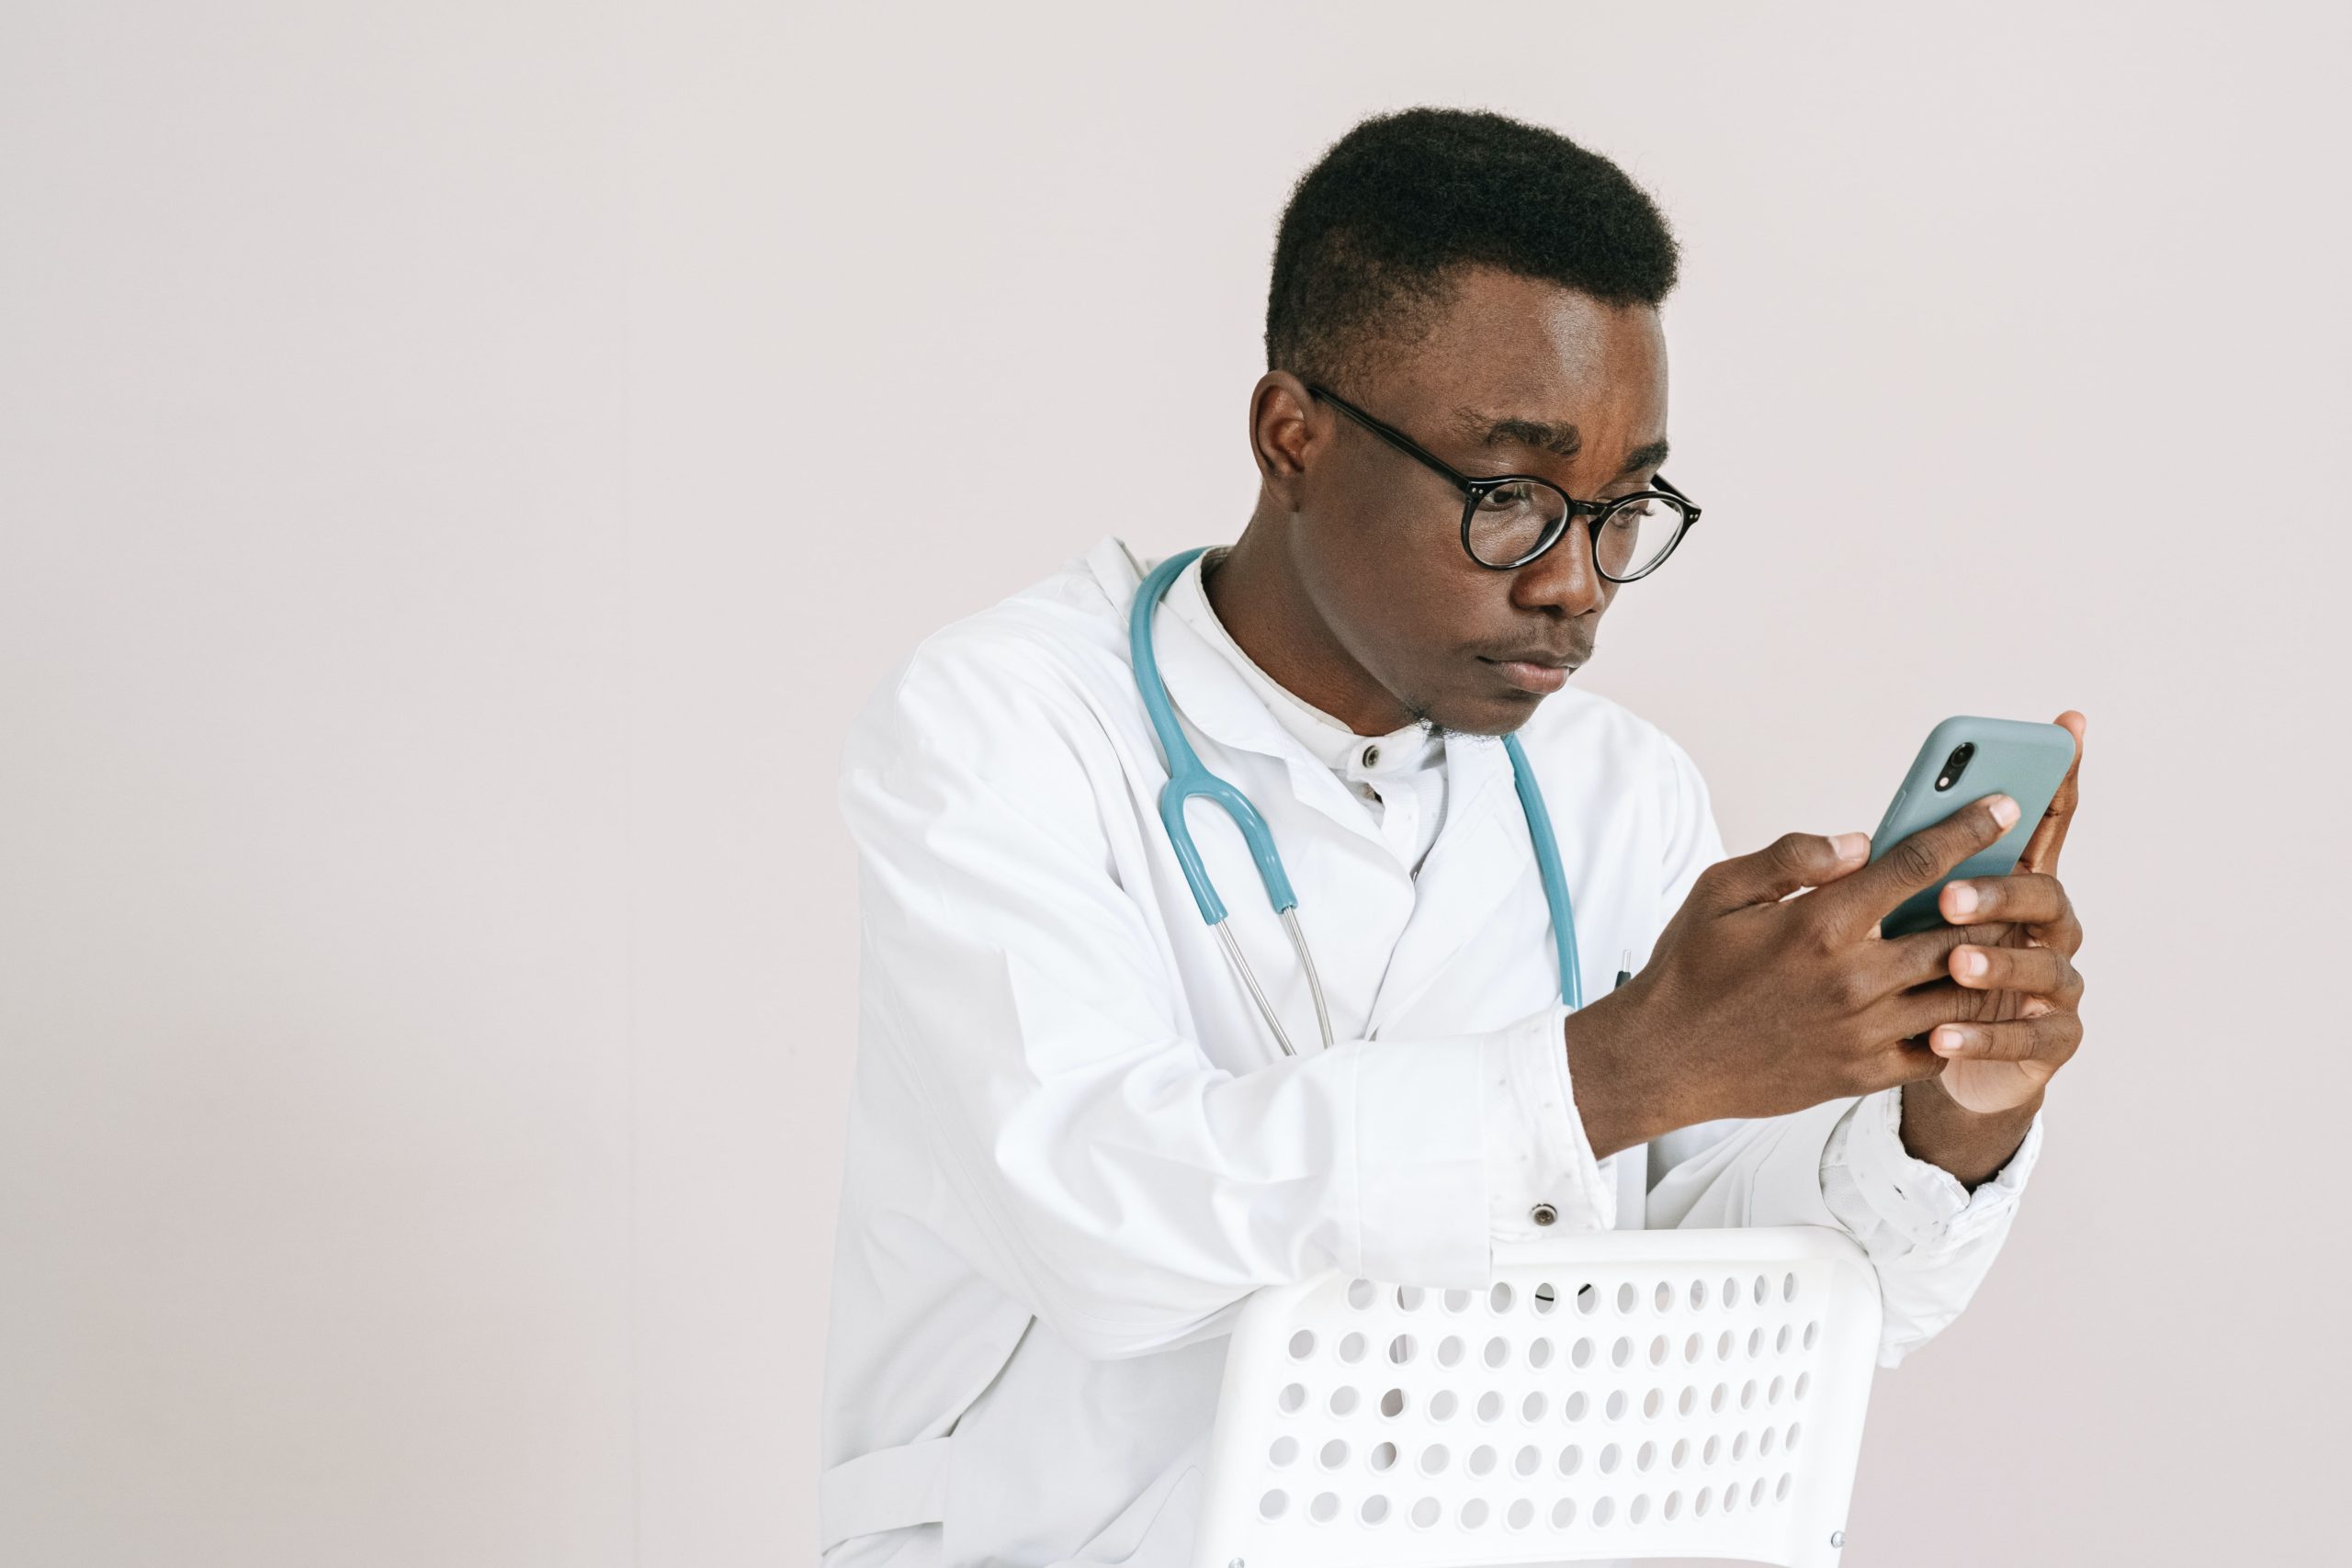 Titelbild: Arzt schaut auf seinem Handy ins DiGA Verzeichnis und möchte die richtige DiGA für seine Patienten finden